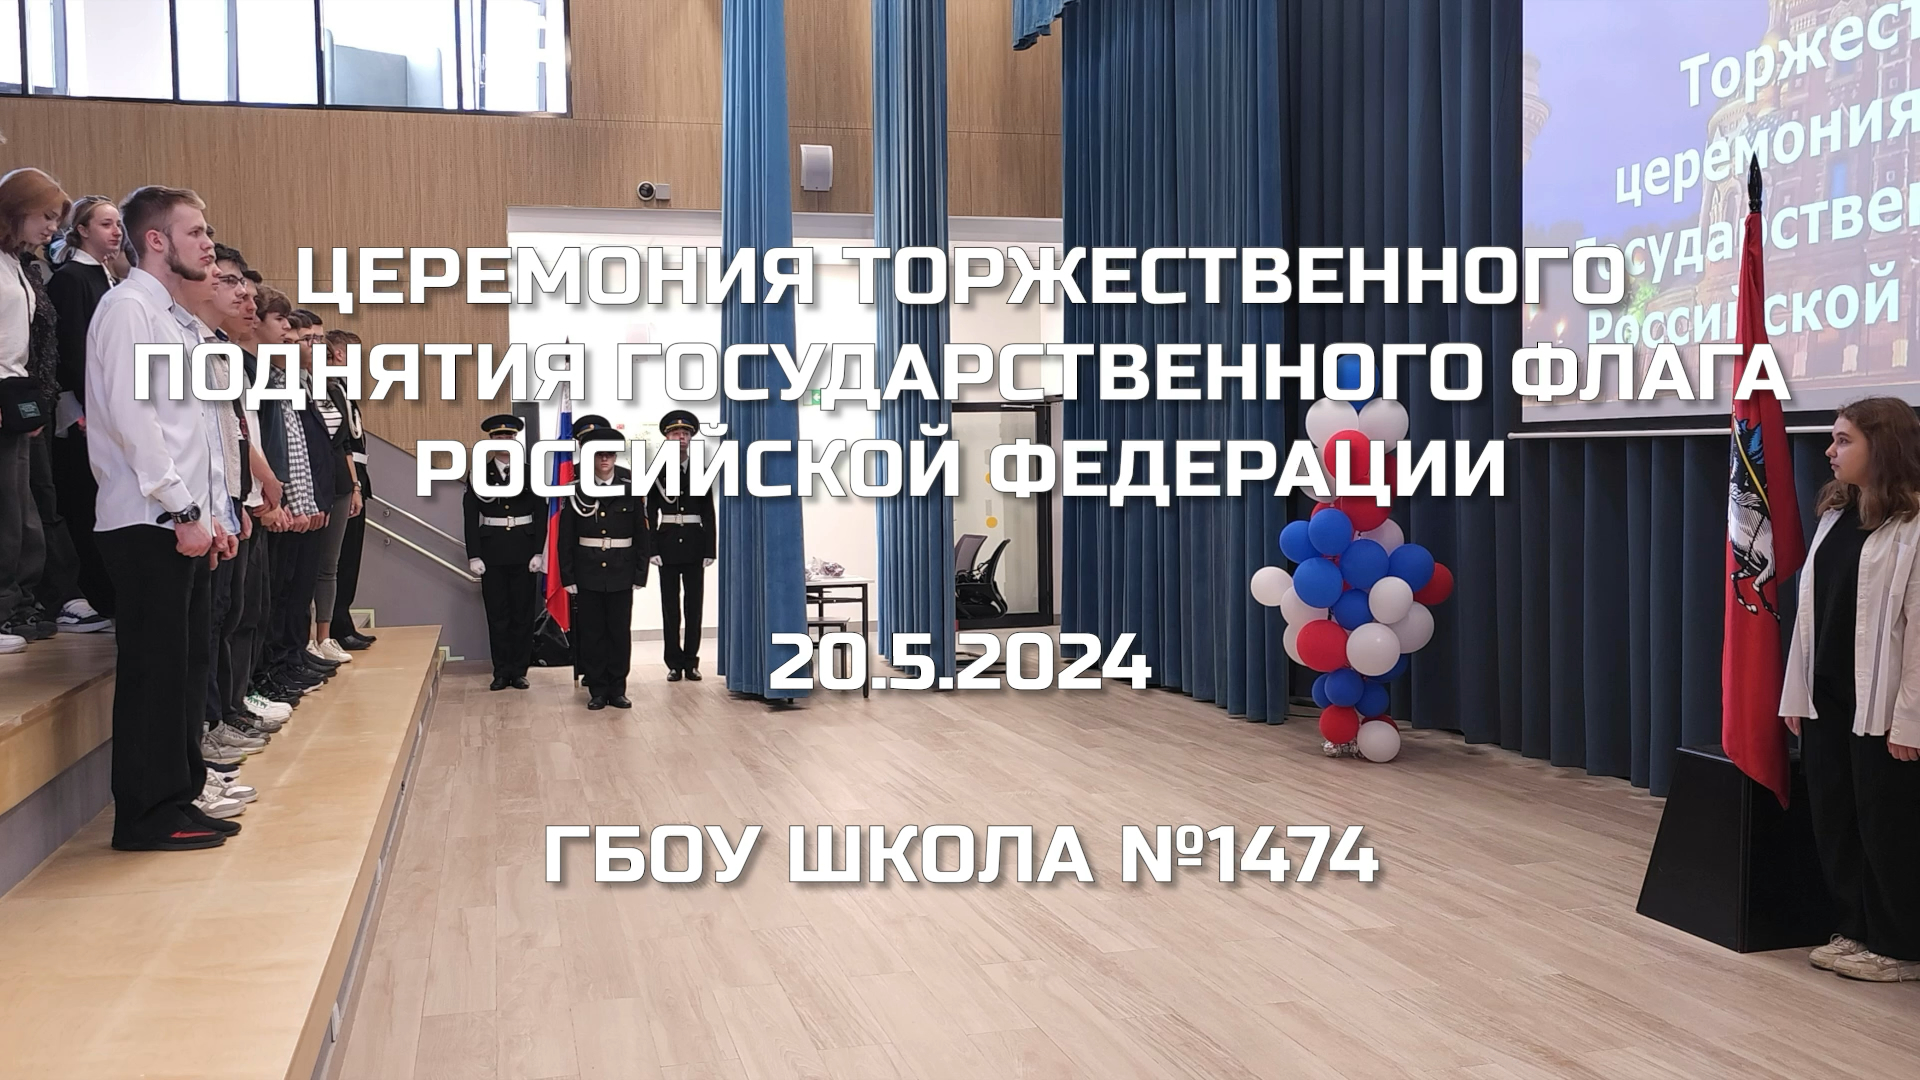 Церемония торжественного поднятия Государственного флага Российской Федерации 20.05.2024